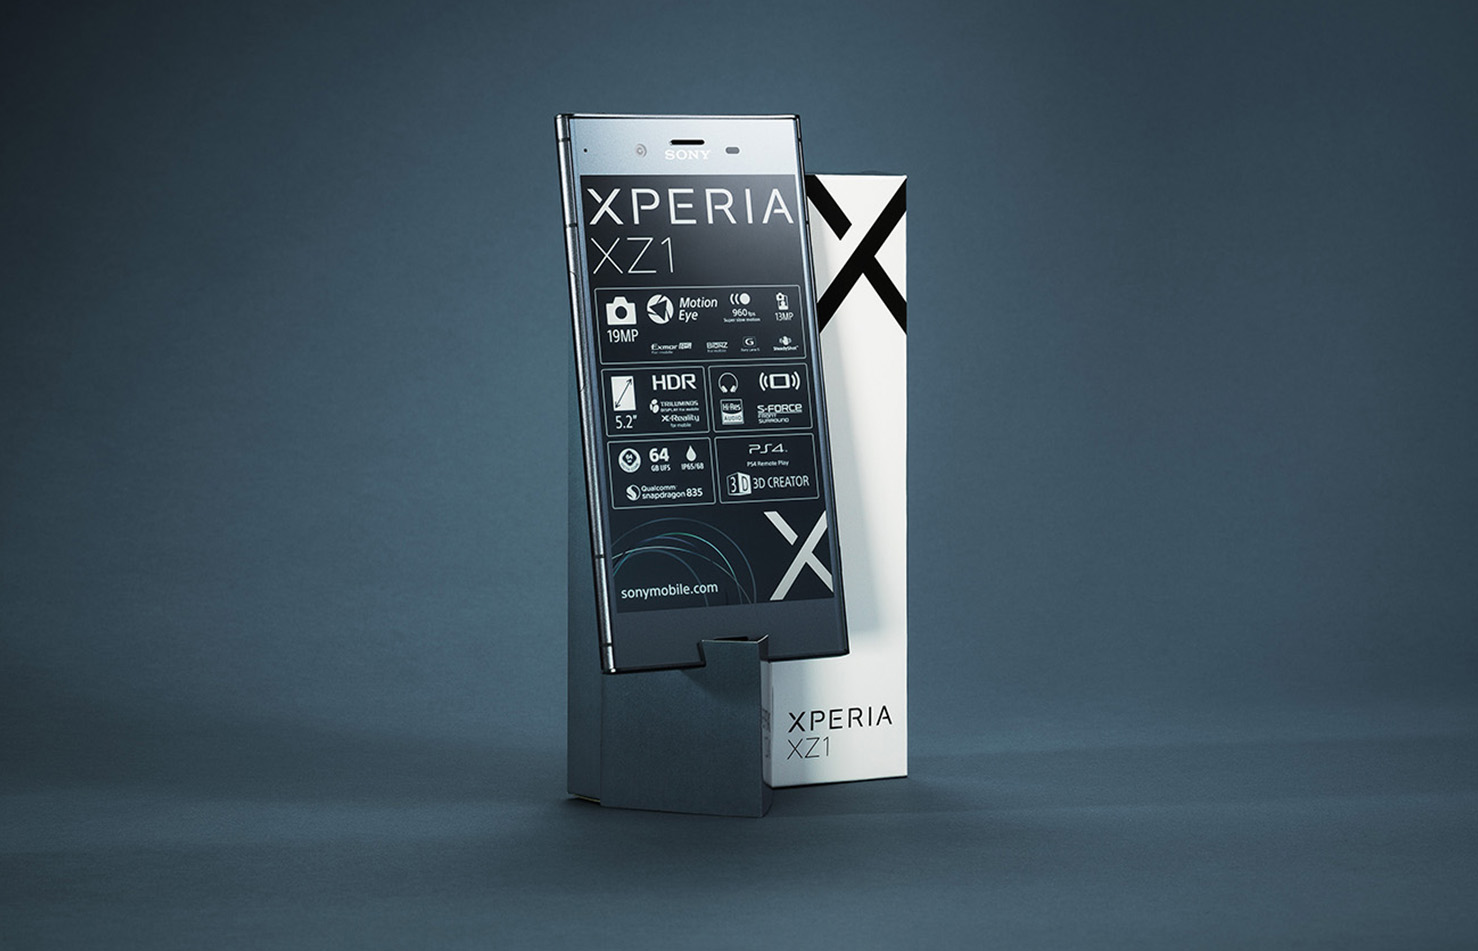 Sony Xperia XZ1 phone by adentity